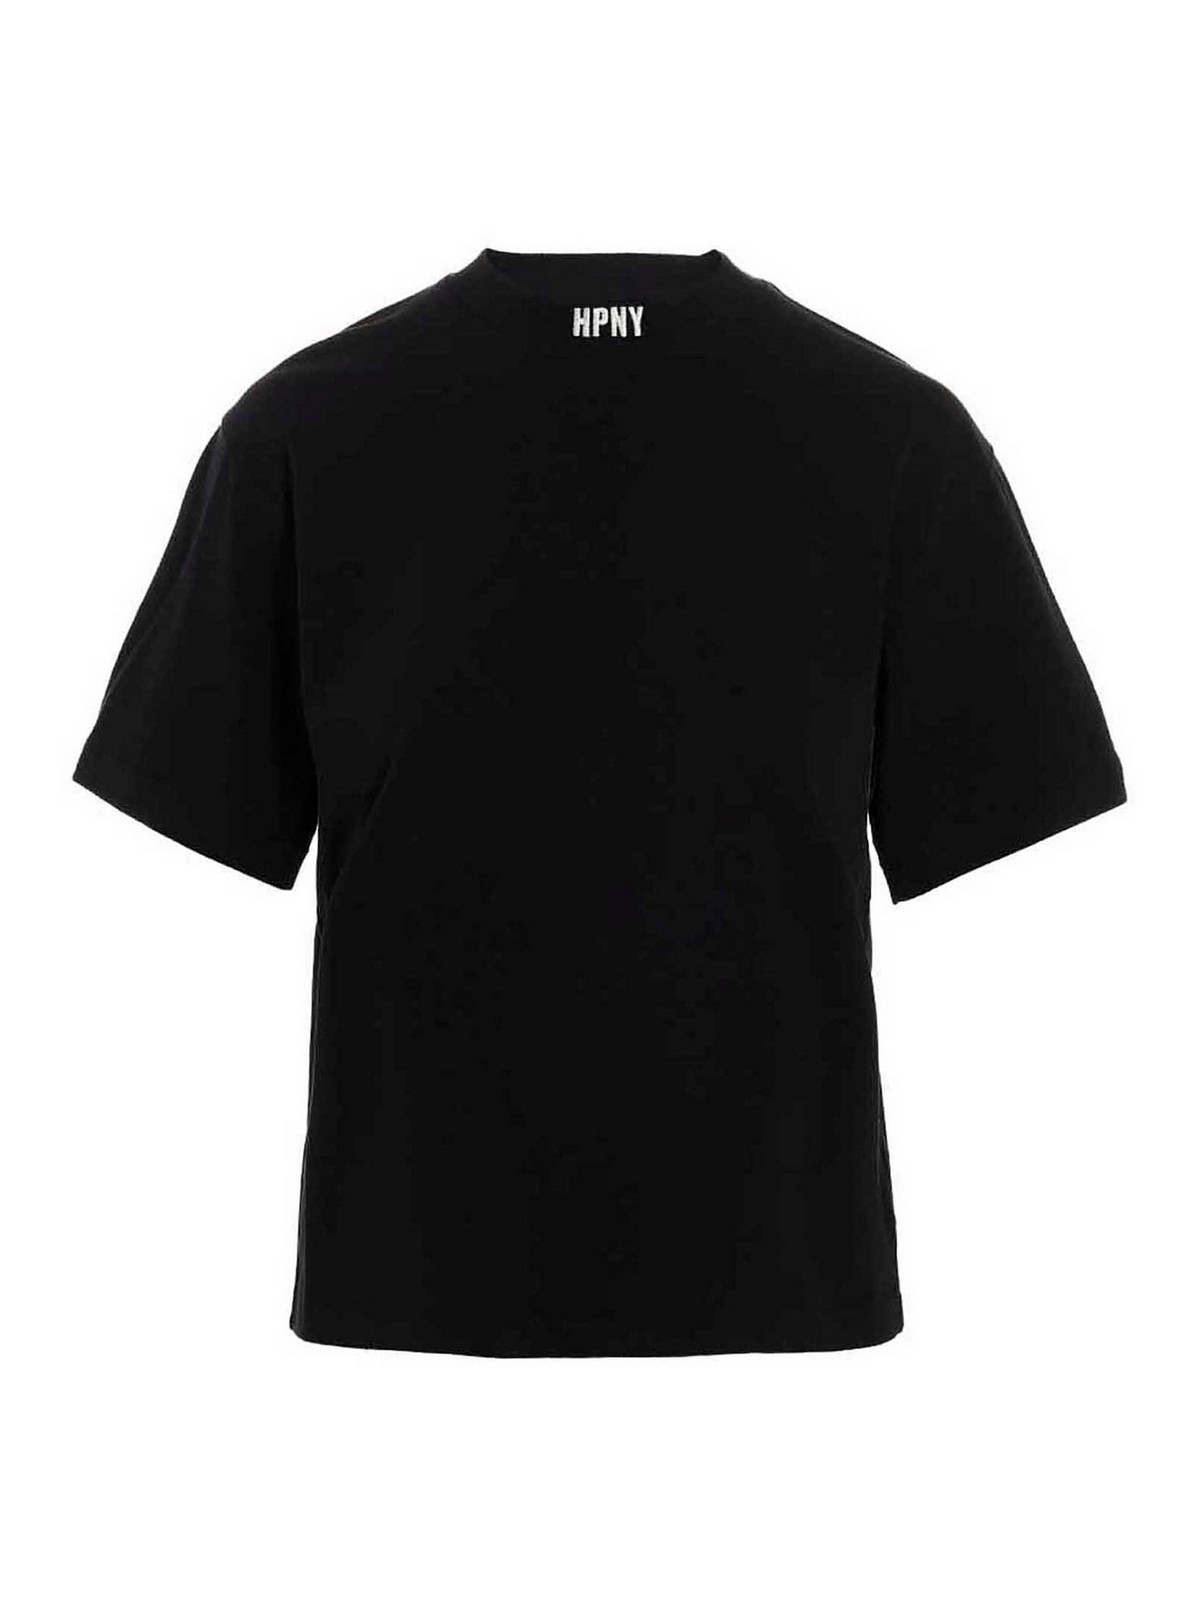 Shop Heron Preston Camiseta - Hpny In Black